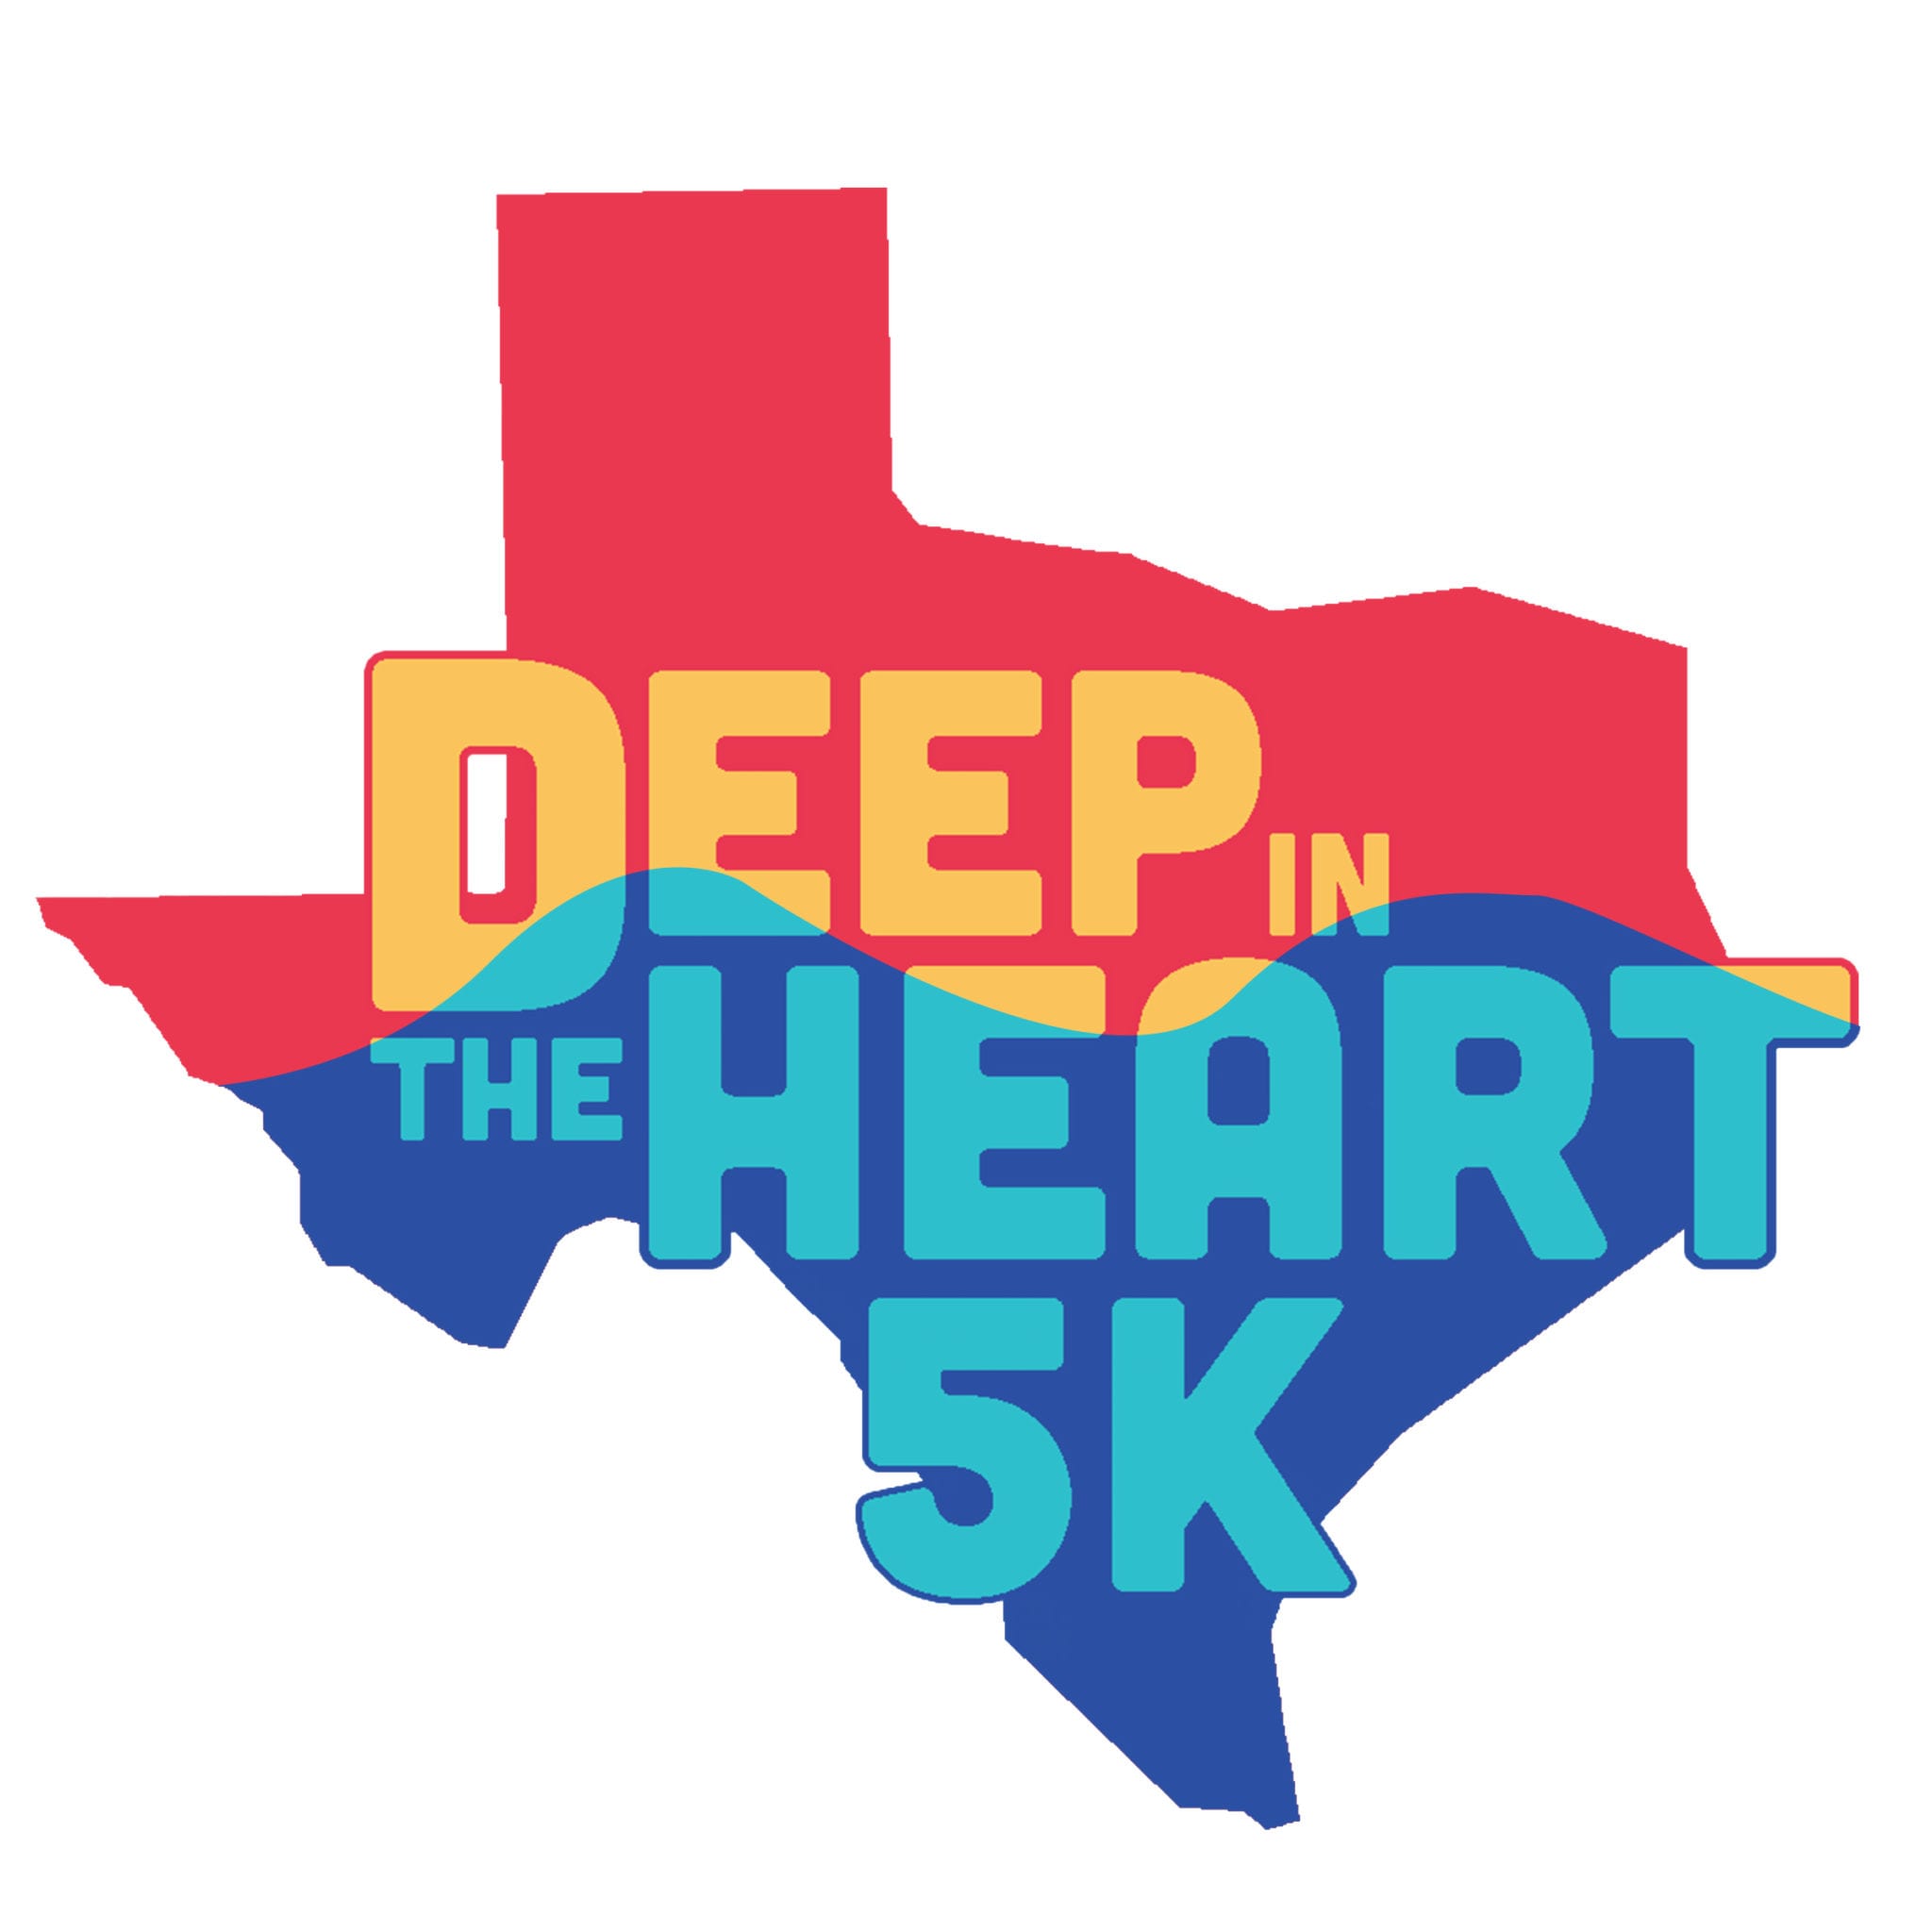 Deep in the Heart 5K logo on RaceRaves